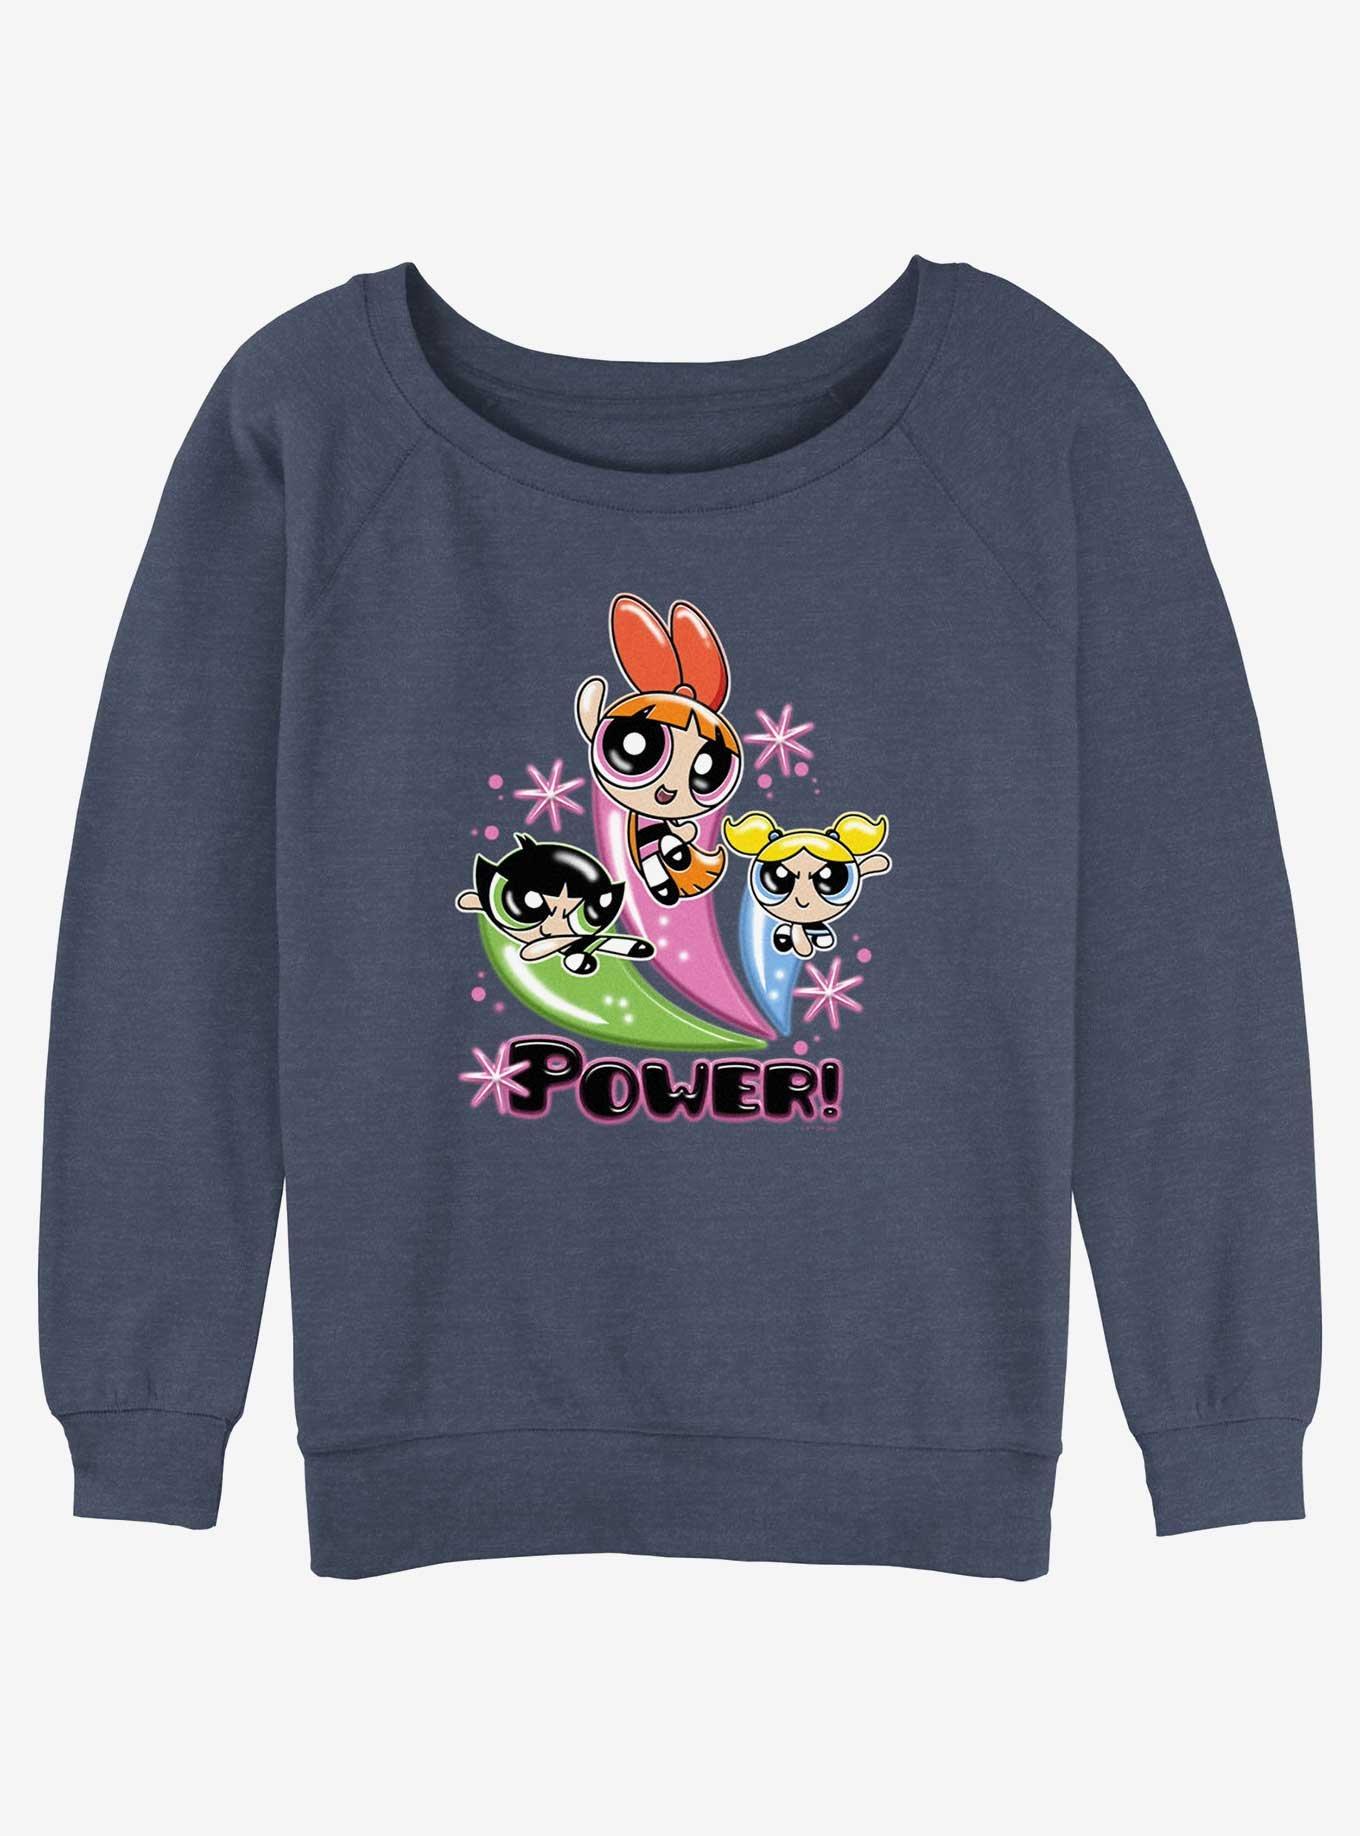 Cartoon Network The Powerpuff Girls Power Pose Womens Slouchy Sweatshirt, , hi-res